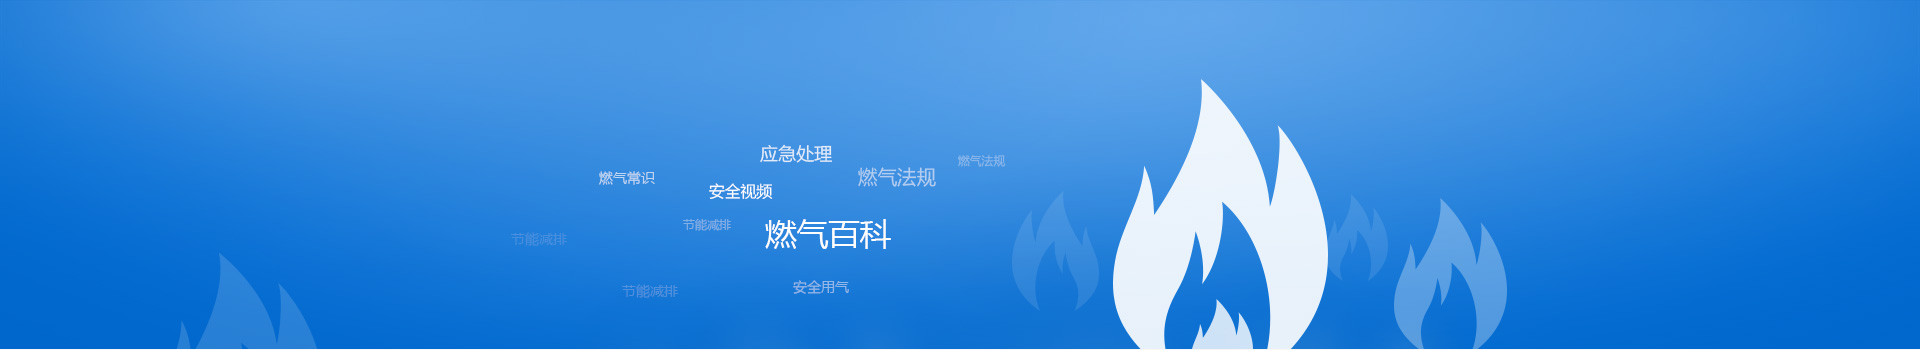 Z6尊龙·凯时(中国)-官方网站_image5525